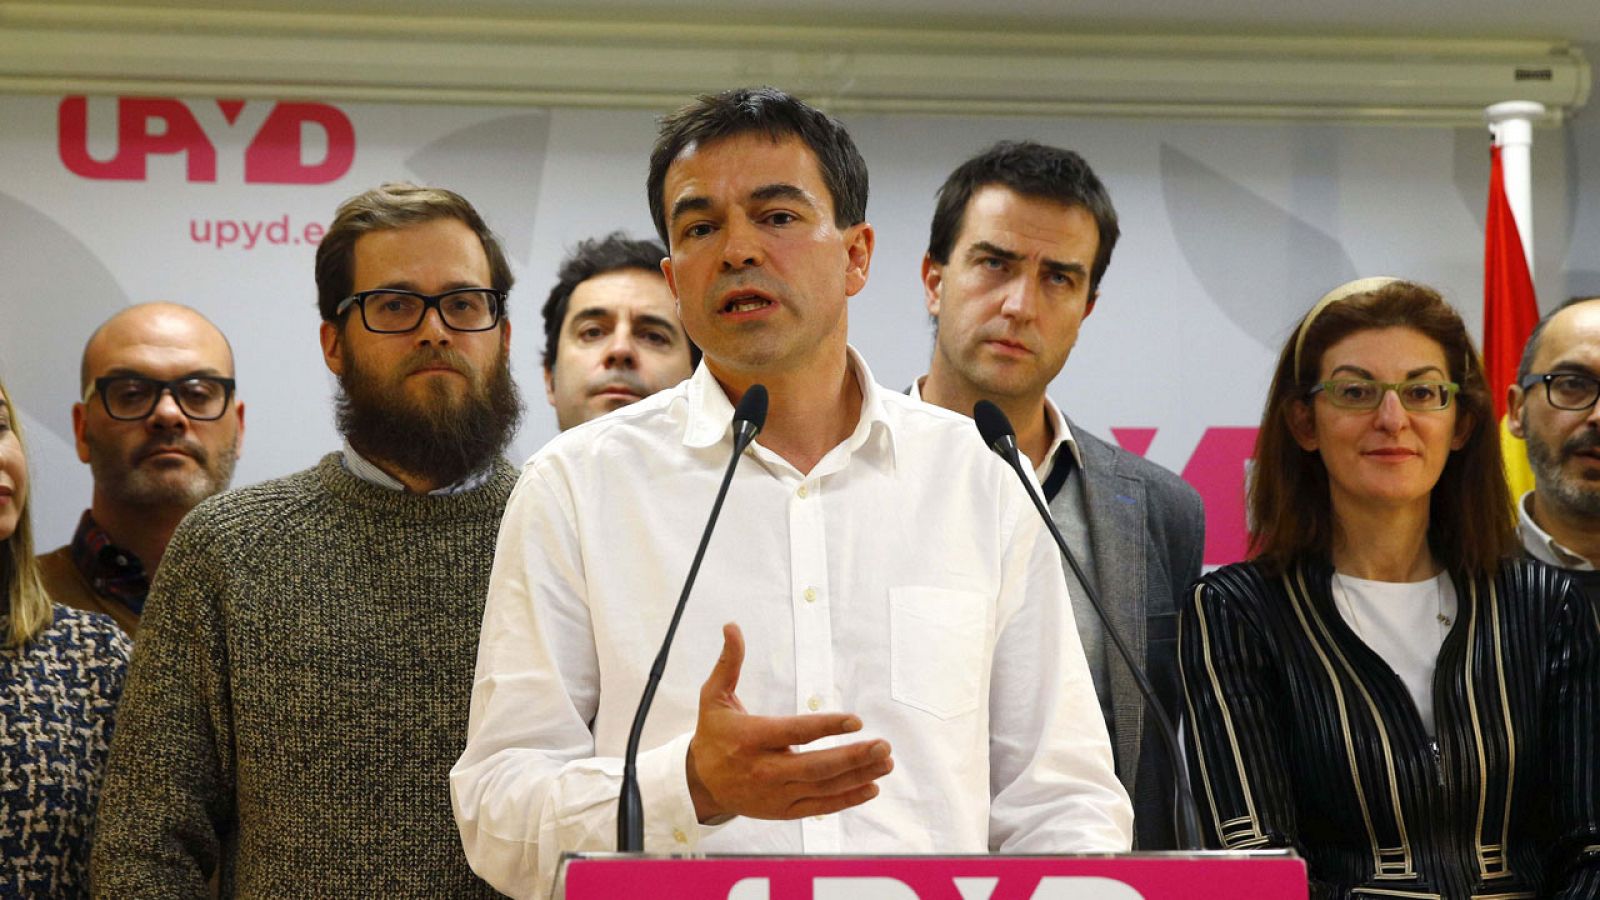 El candidato de UPyD, Andrés Herzog, en la rueda de prensa tras el consejo de dirección del partido.